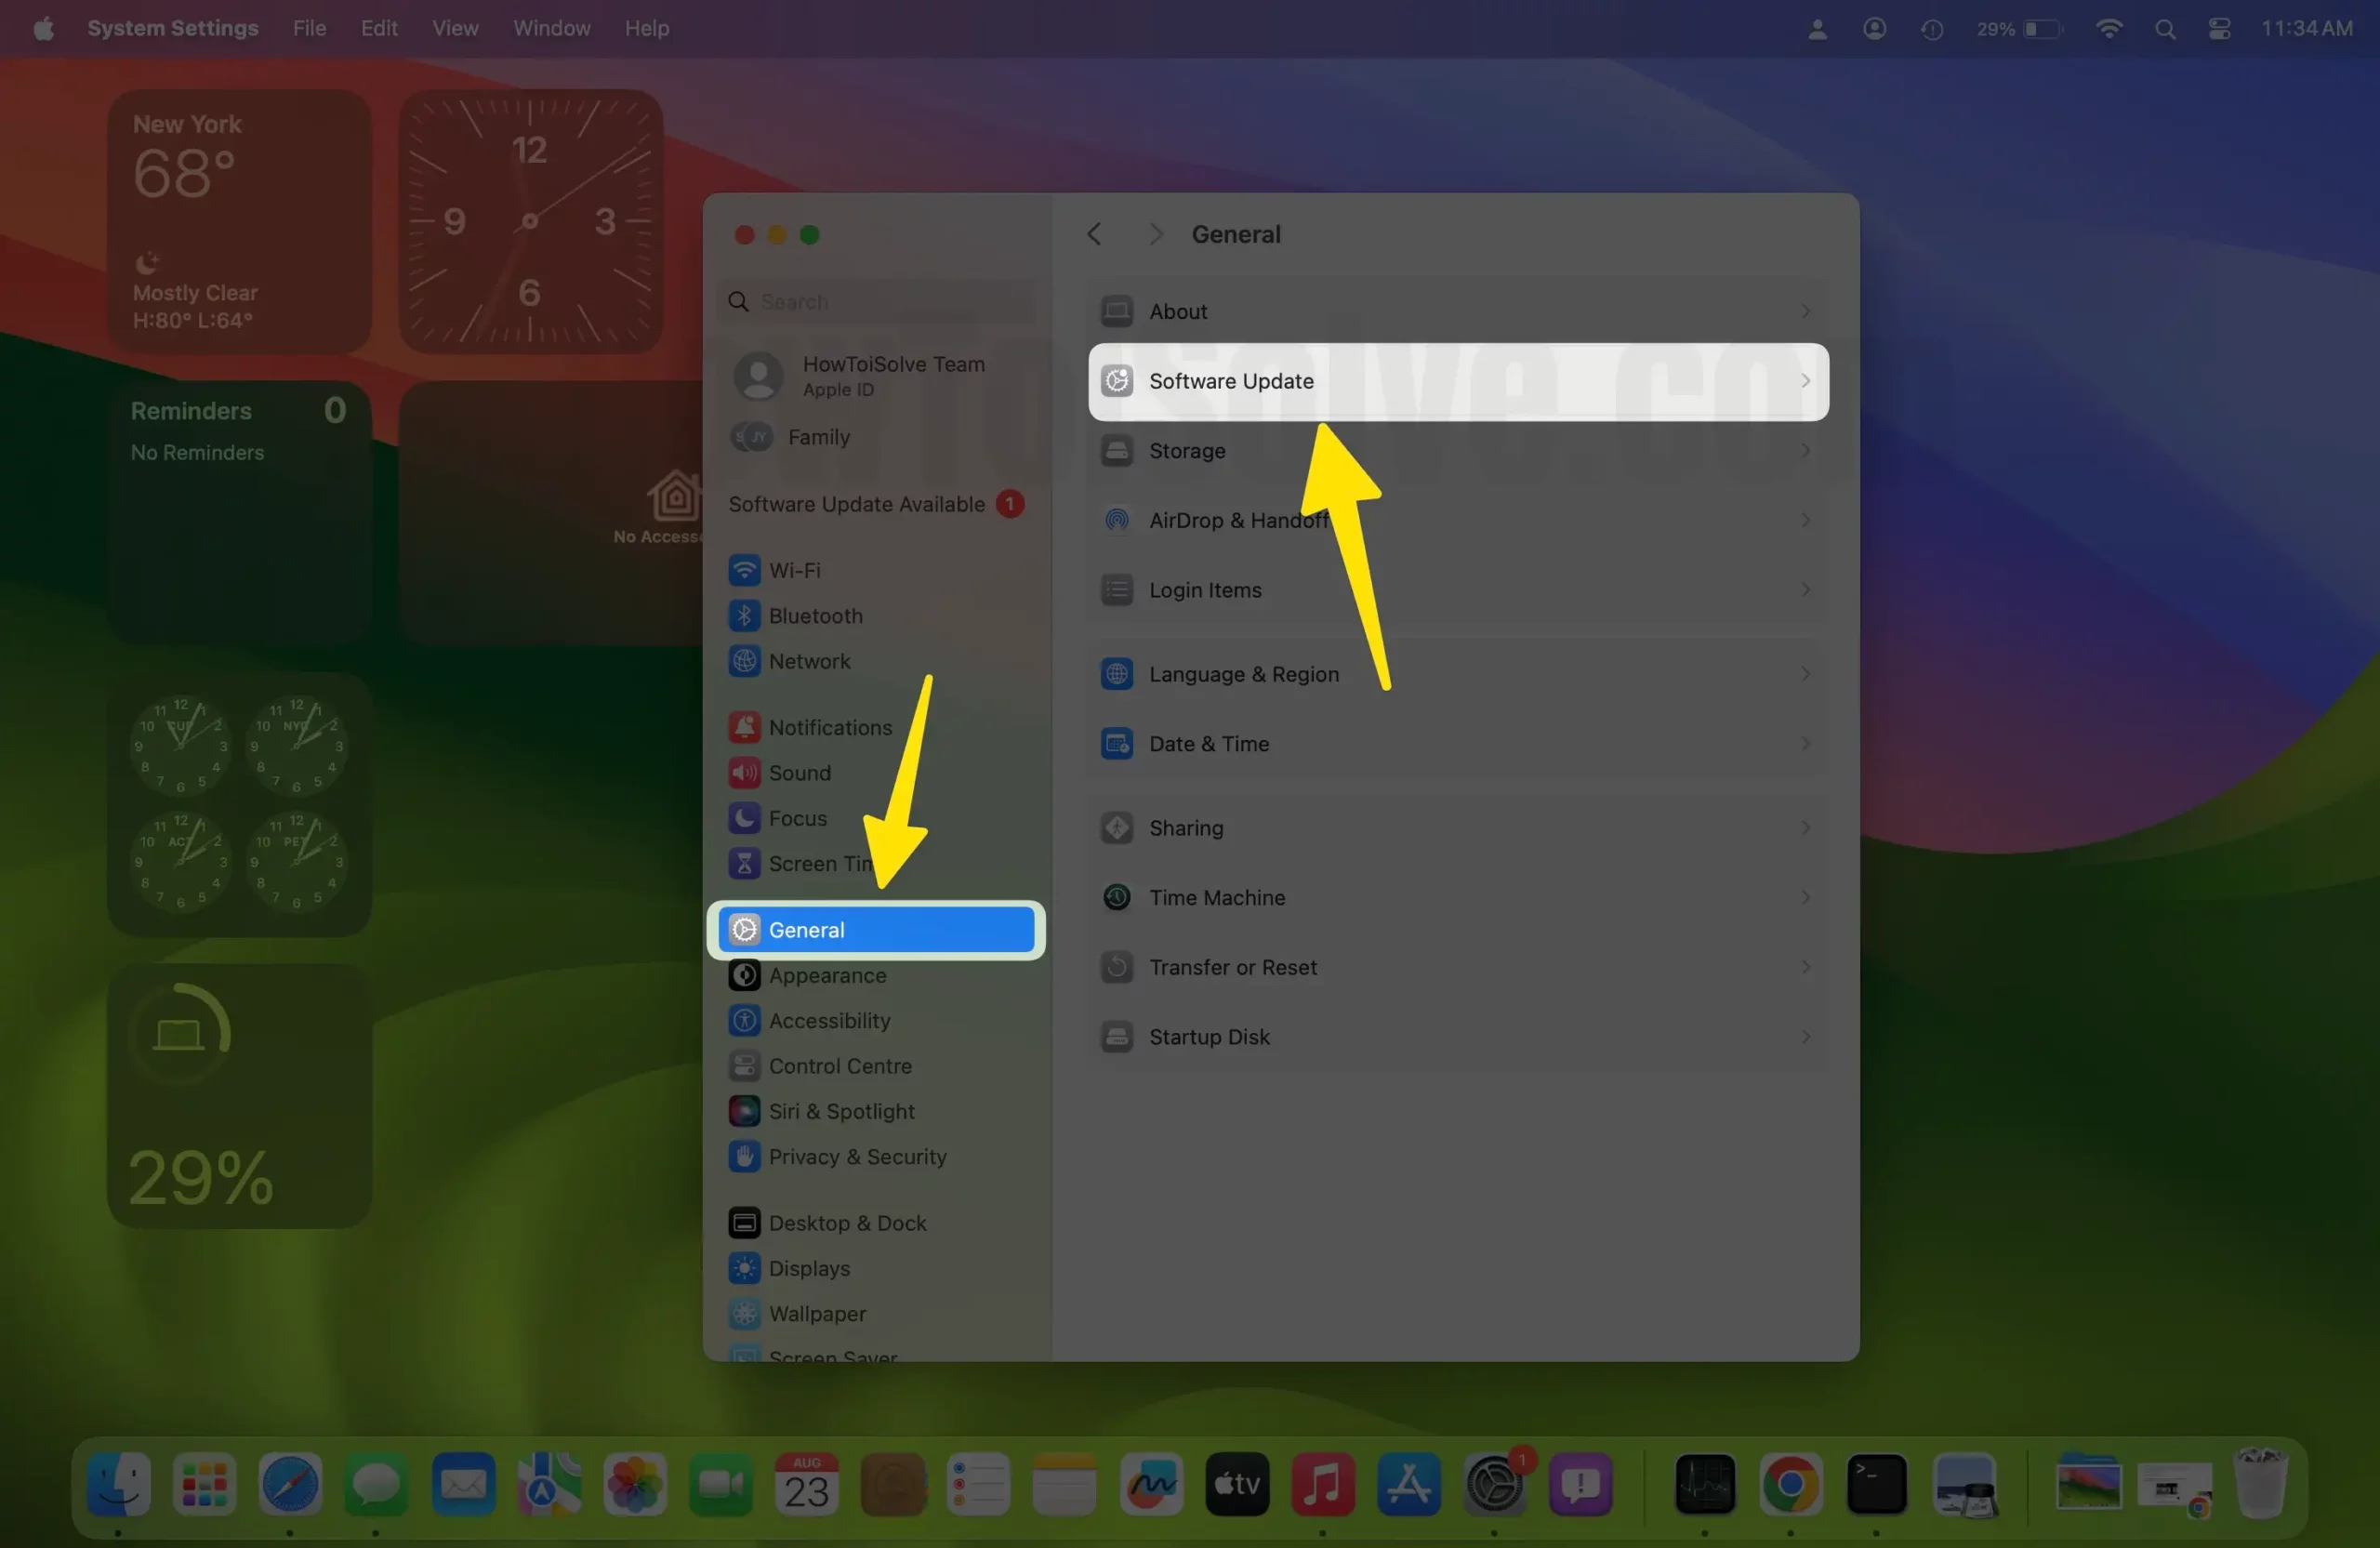 Open Software Update in Settings on Mac